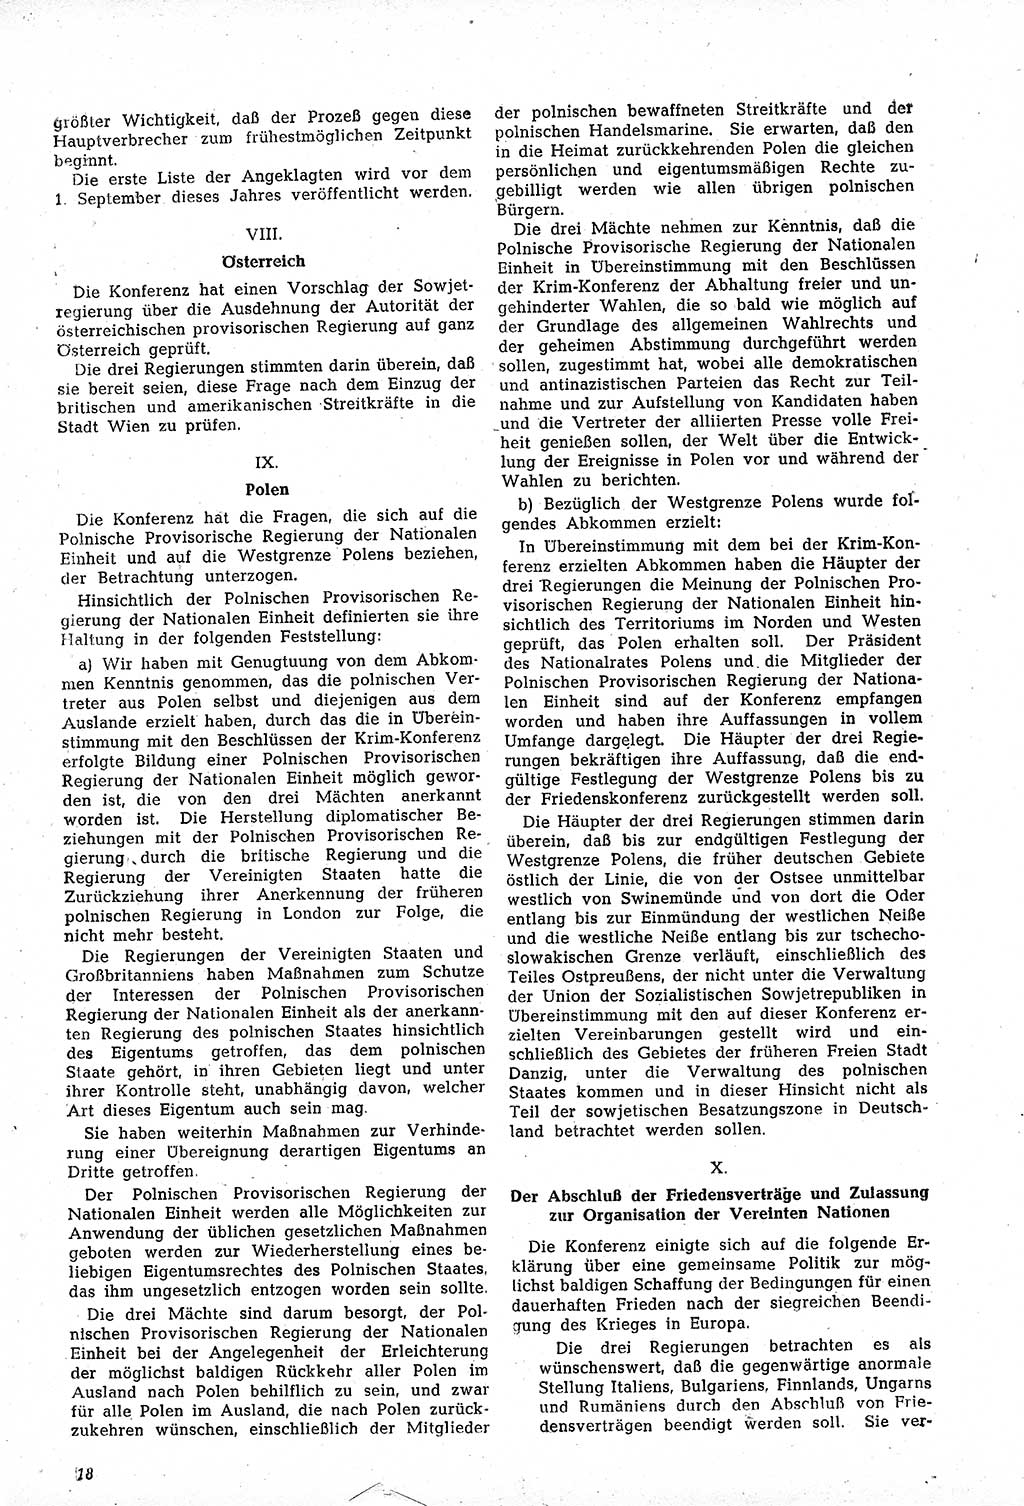 Amtsblatt des Kontrollrats (ABlKR) in Deutschland, Ergänzungsblatt Nr. 1, Sammlung von Urkunden betreffend die Errichtung der Alliierten Kontrollbehörde 1945, Seite 18 (ABlKR Dtl., Erg. Bl. 1 1945, S. 18)